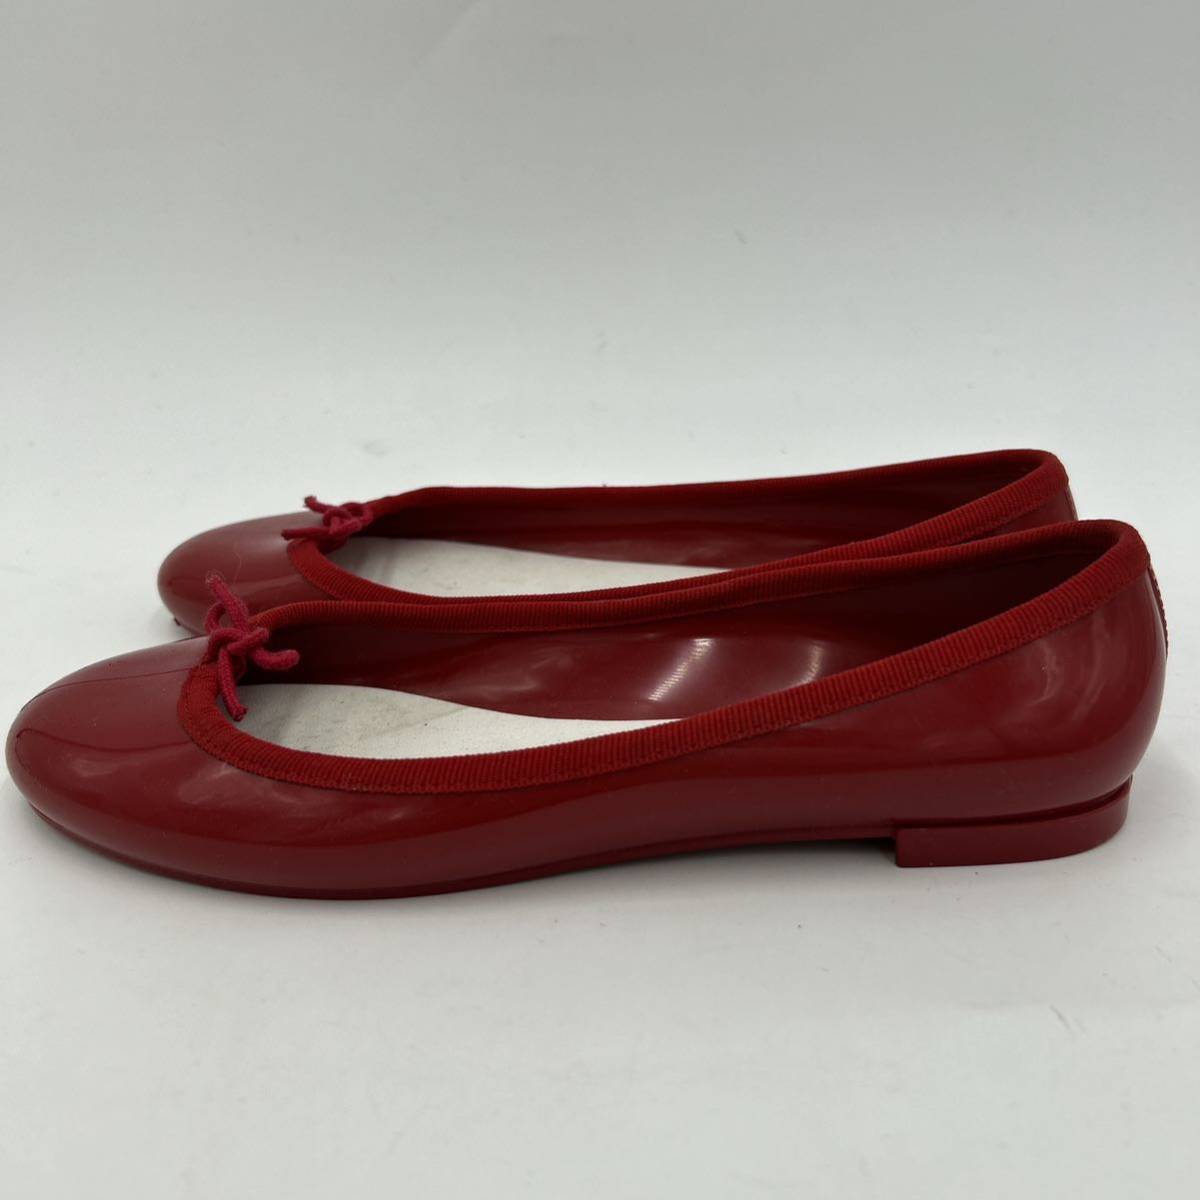 C @ 洗礼されたデザイン '履き心地抜群' repetto レペット 婦人靴 ラバー素材 バレエシューズ / フラットパンプス EU36 22.5cm 婦人靴 _画像3